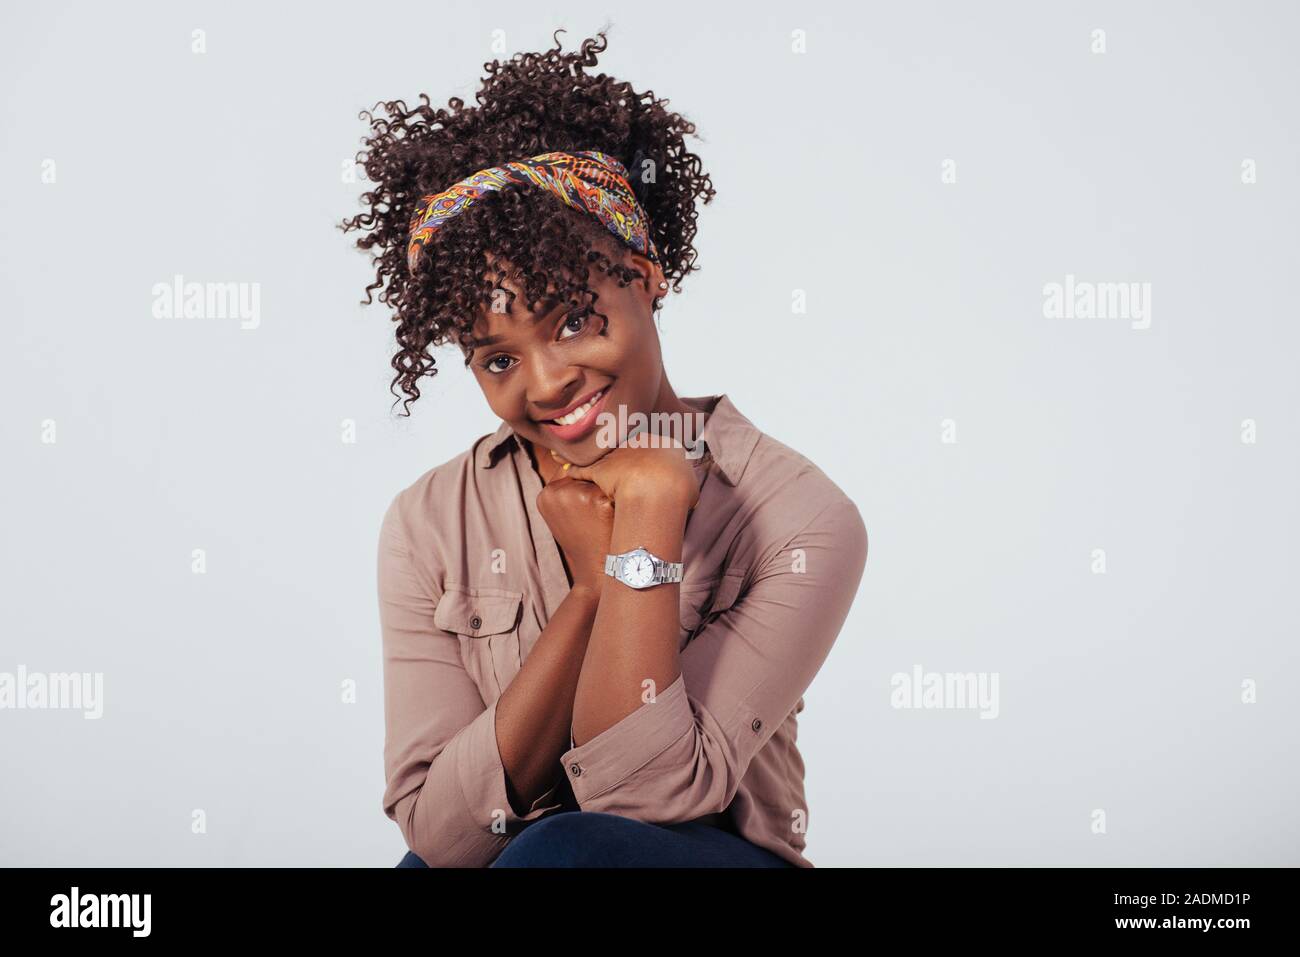 Nizza cutie. Bella afro american ragazza con i capelli ricci in studio con sfondo bianco Foto Stock